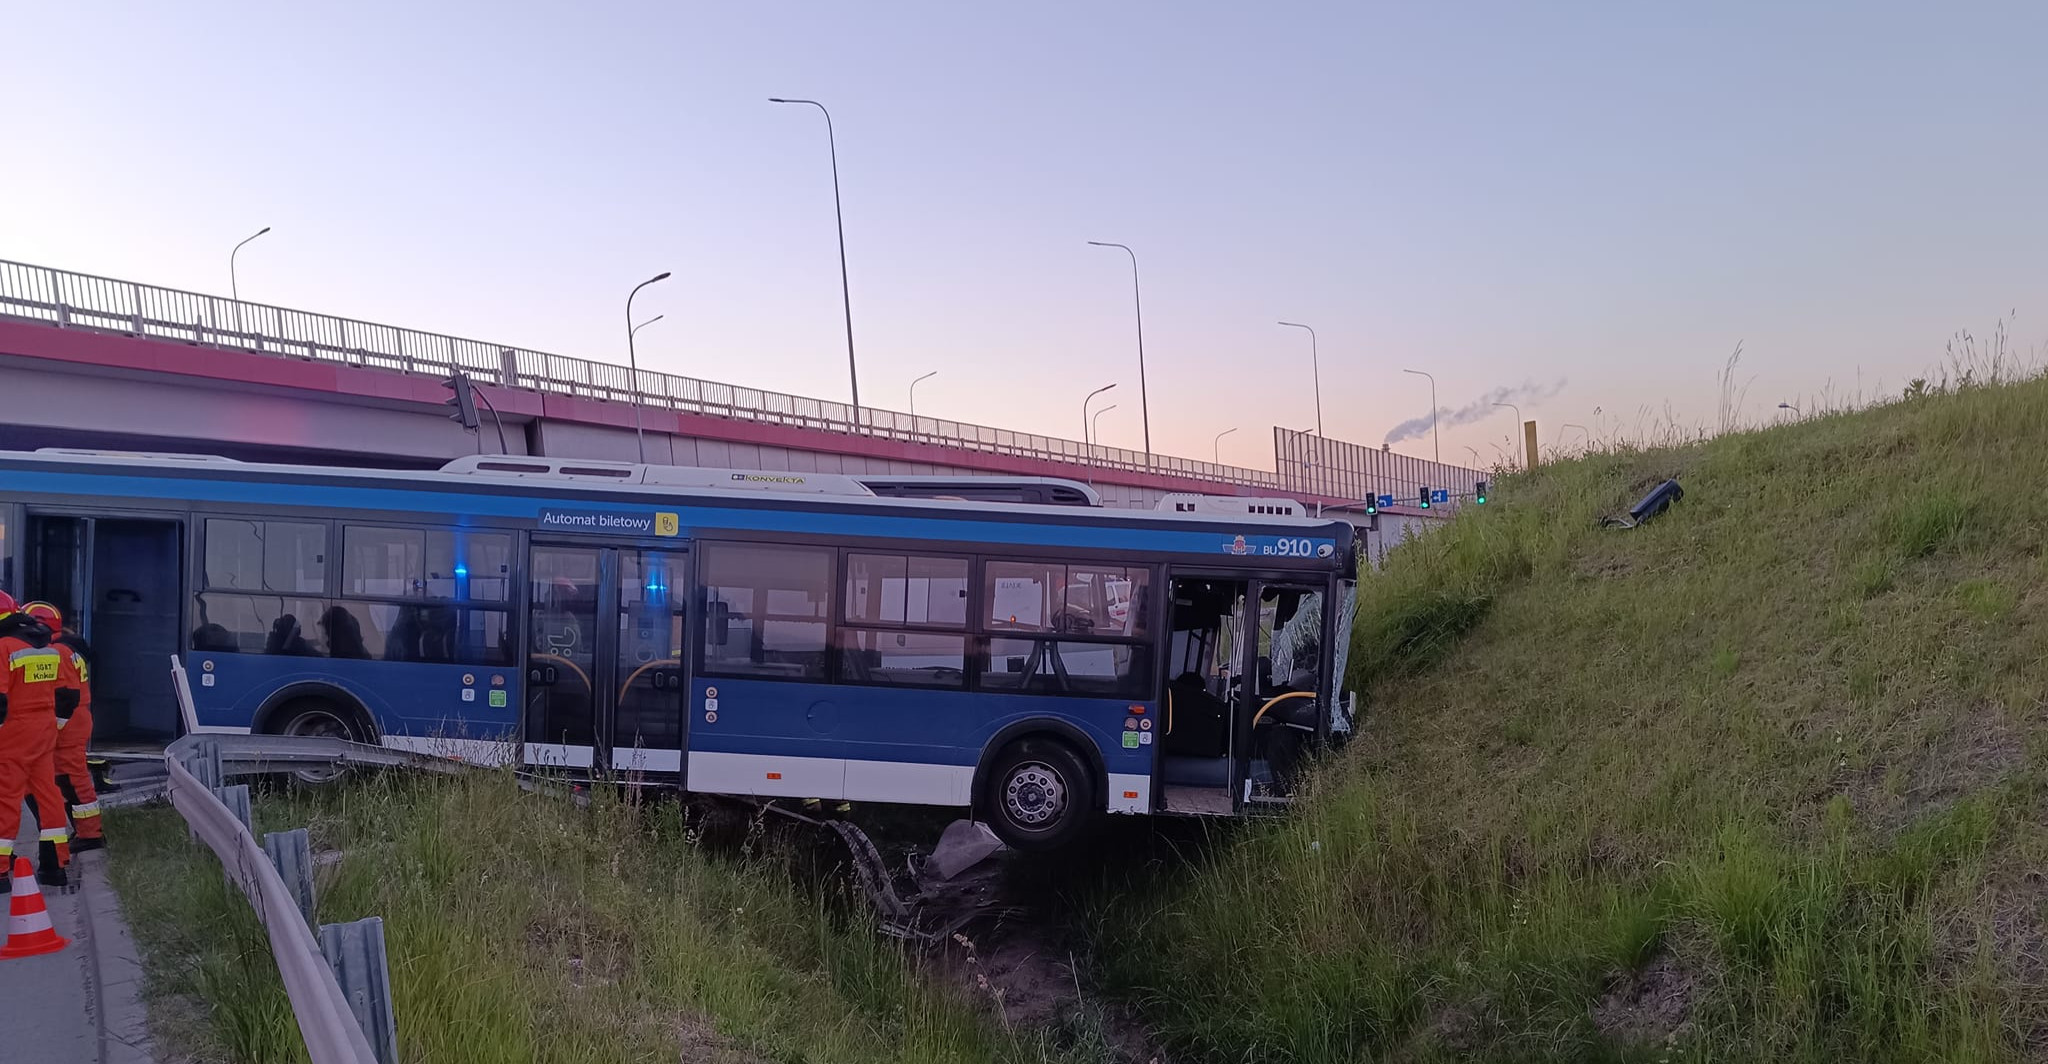 Z KRAJU: Śmiertelny wypadek. Nie żyje kierowca autobusu (ZDJĘCIA)